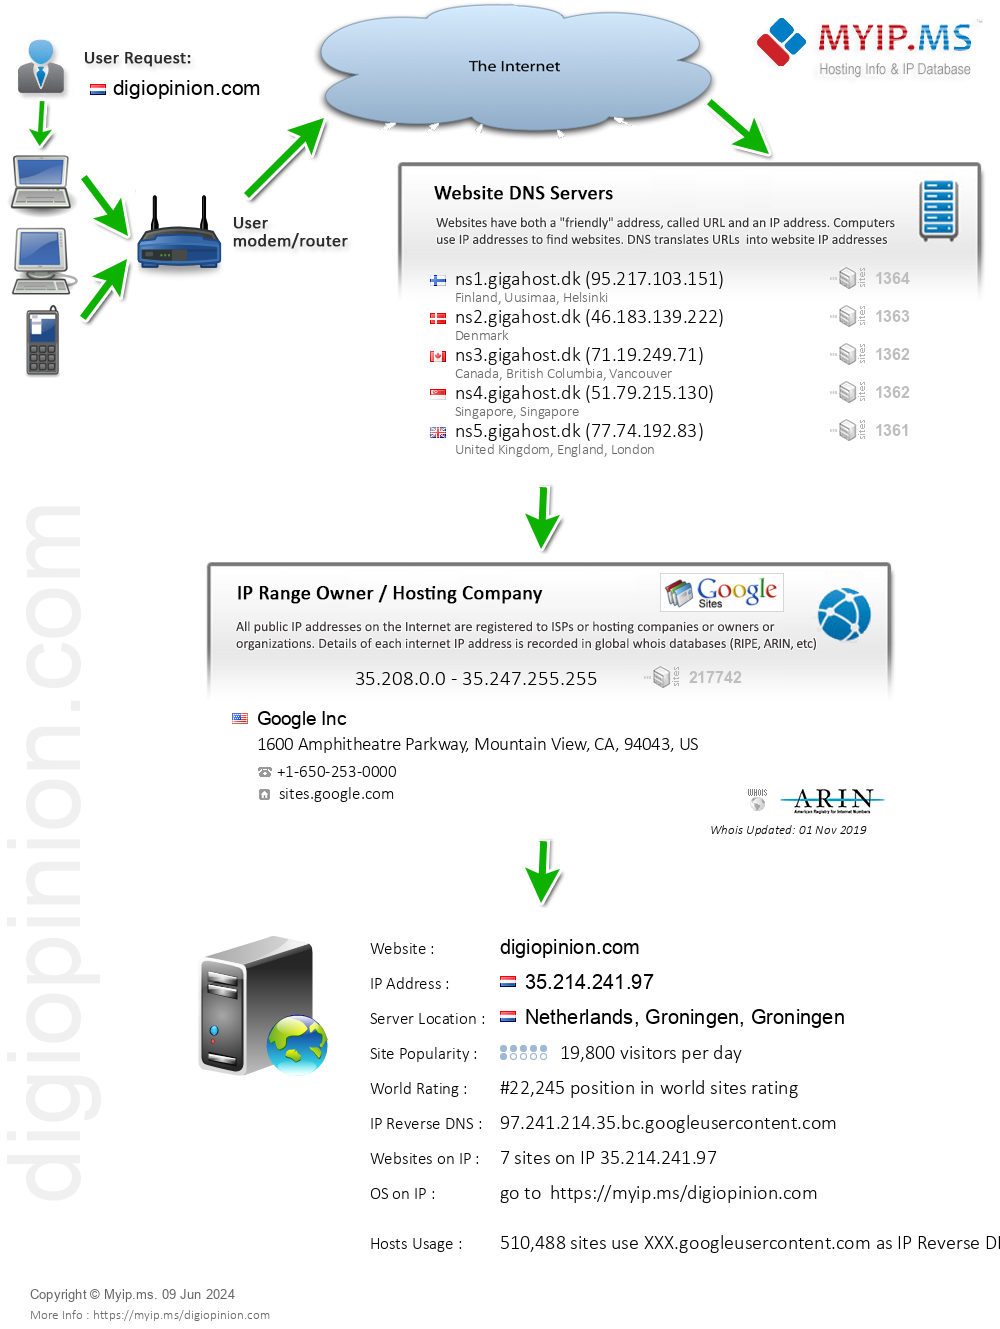 Digiopinion.com - Website Hosting Visual IP Diagram